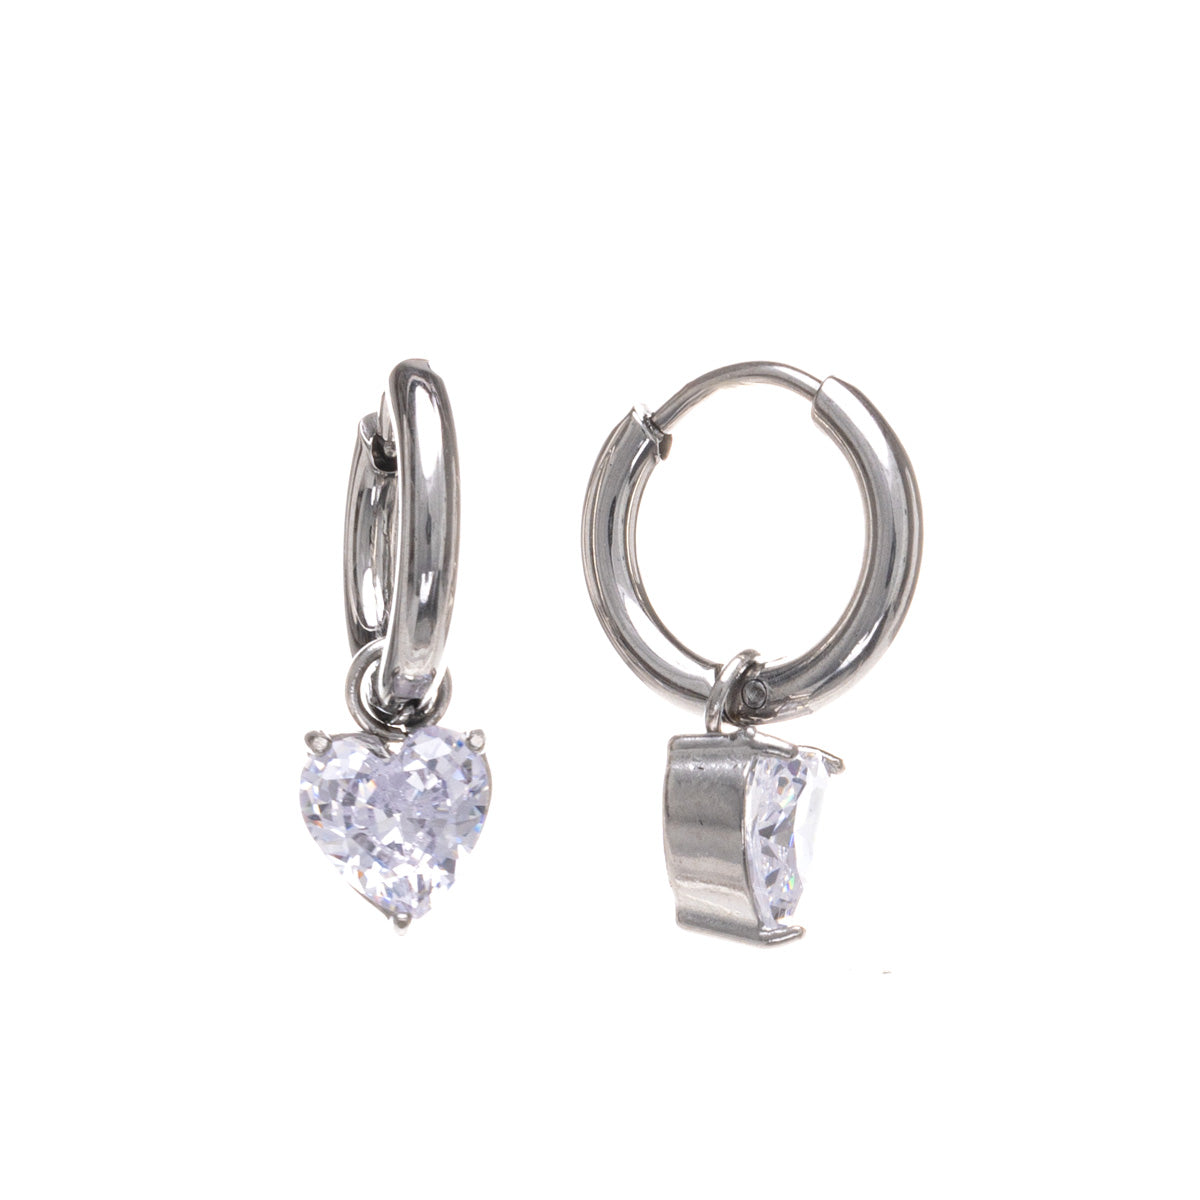 Glass heart pendant earrings steel ring earrings